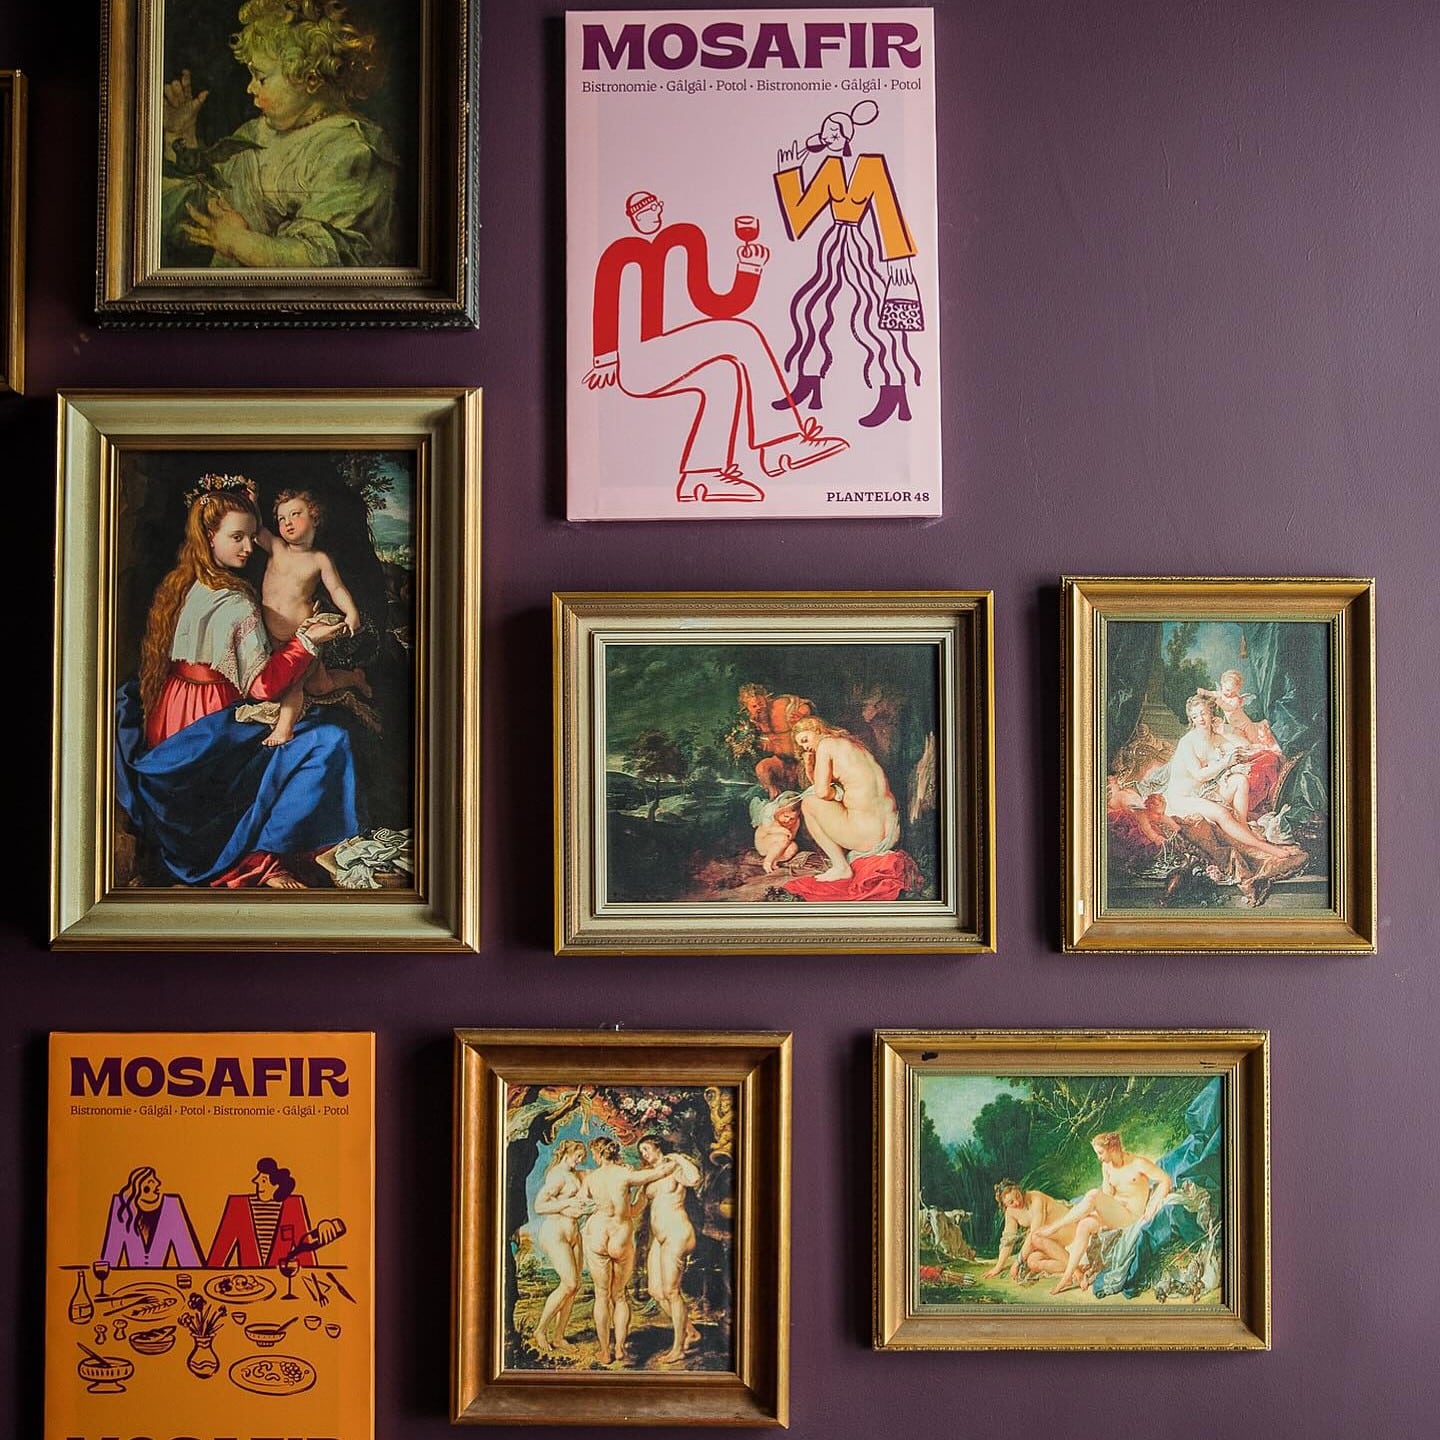 mai multe rame de tablou in resdtaurant Mosafir, care urmeaza sa se deschida in Bucuresti